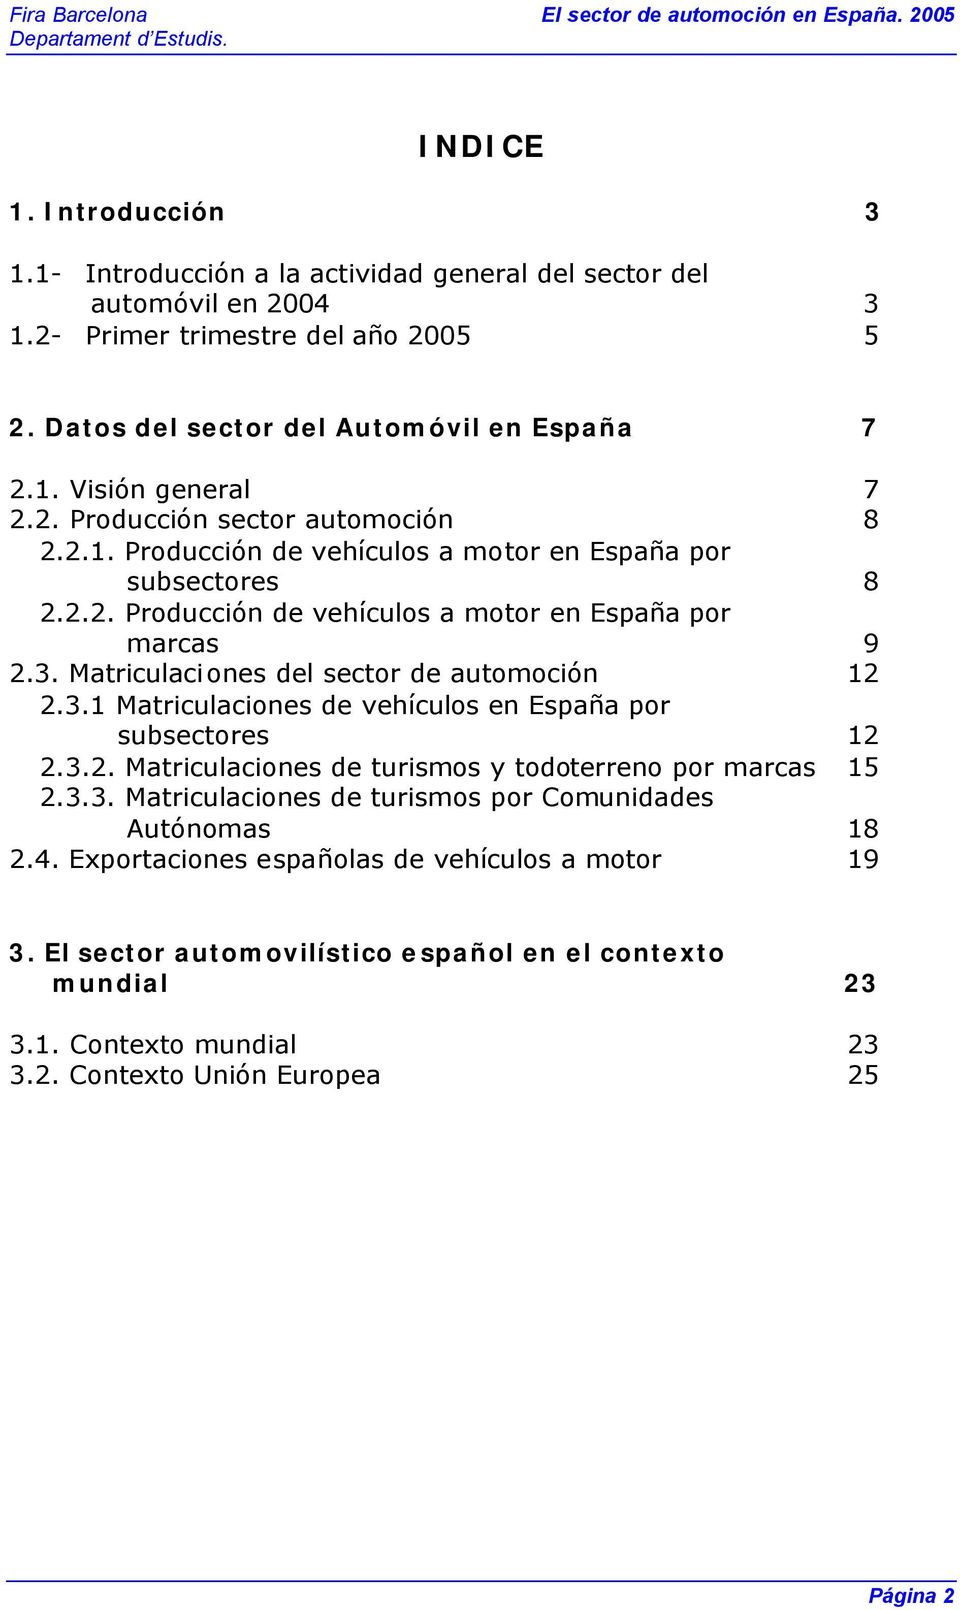 Matriculaciones del sector de automoción 12 2.3.1 Matriculaciones de vehículos en España por subsectores 12 2.3.2. Matriculaciones de turismos y todoterreno por marcas 15 2.3.3. Matriculaciones de turismos por Comunidades Autónomas 18 2.